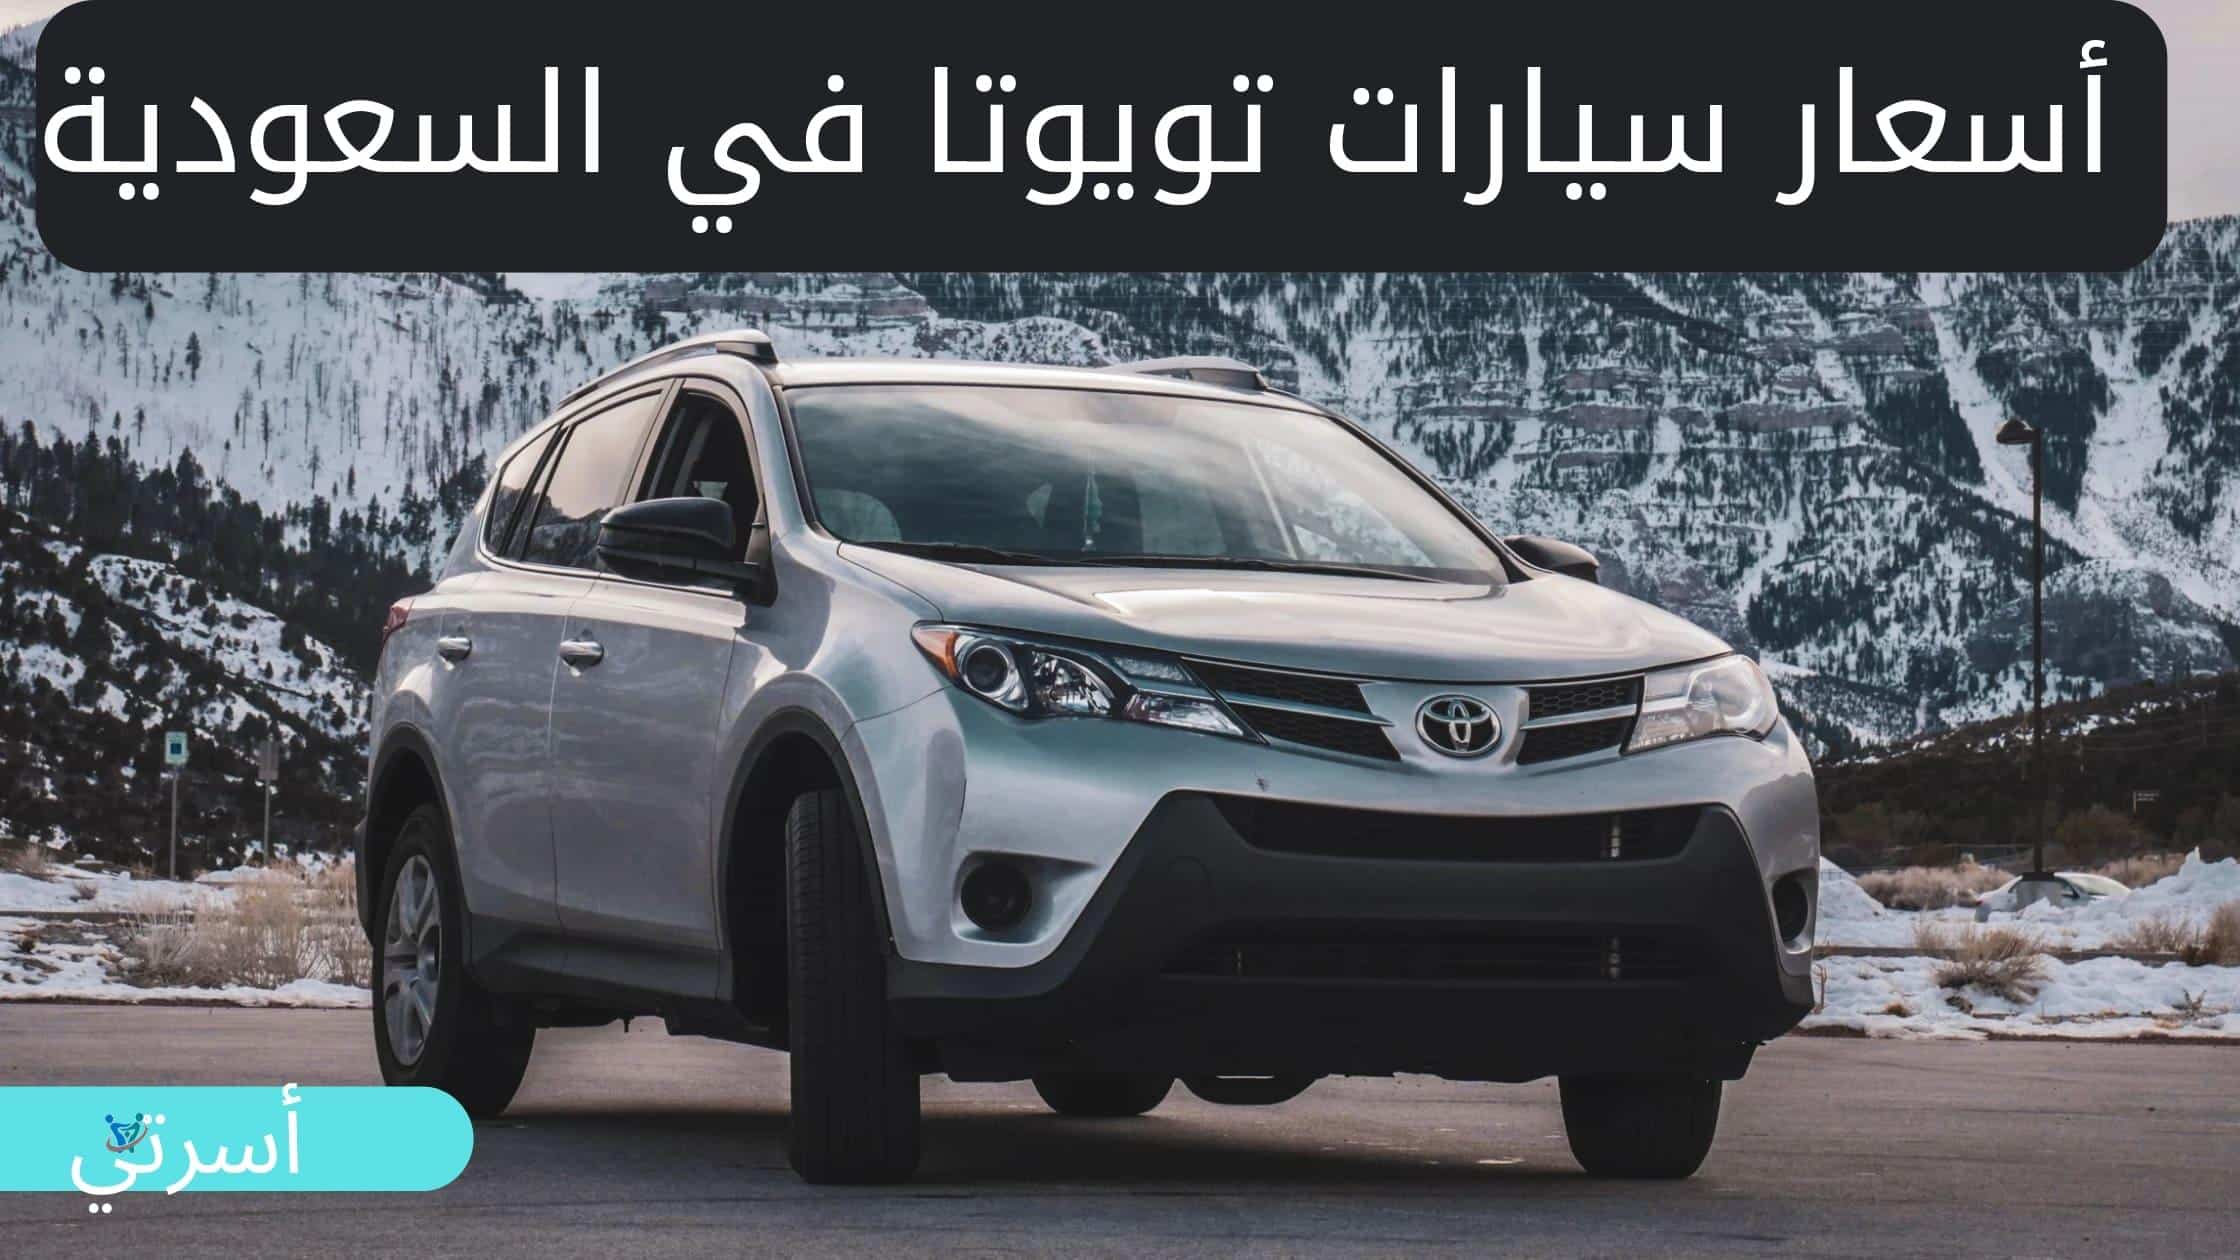 إليك مجموعة من أرخص سيارات تويوتا في دول الخليج وخاصة السعودية ومعرفة مواصفاتها وأسعارها 